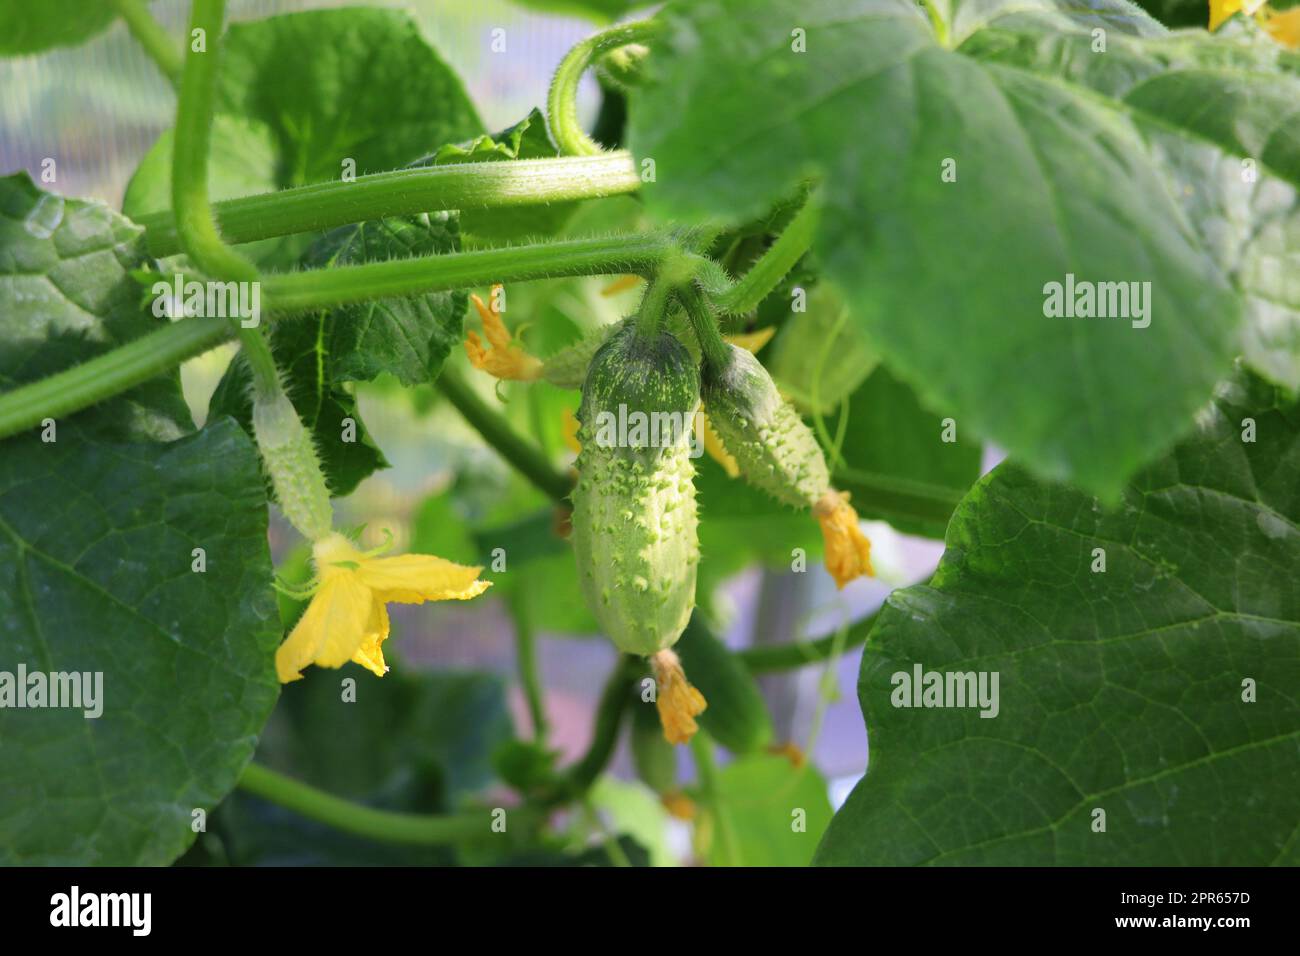 Cetrioli che crescono in serra, ortaggi sani senza pesticidi, prodotto biologico. Foto Stock